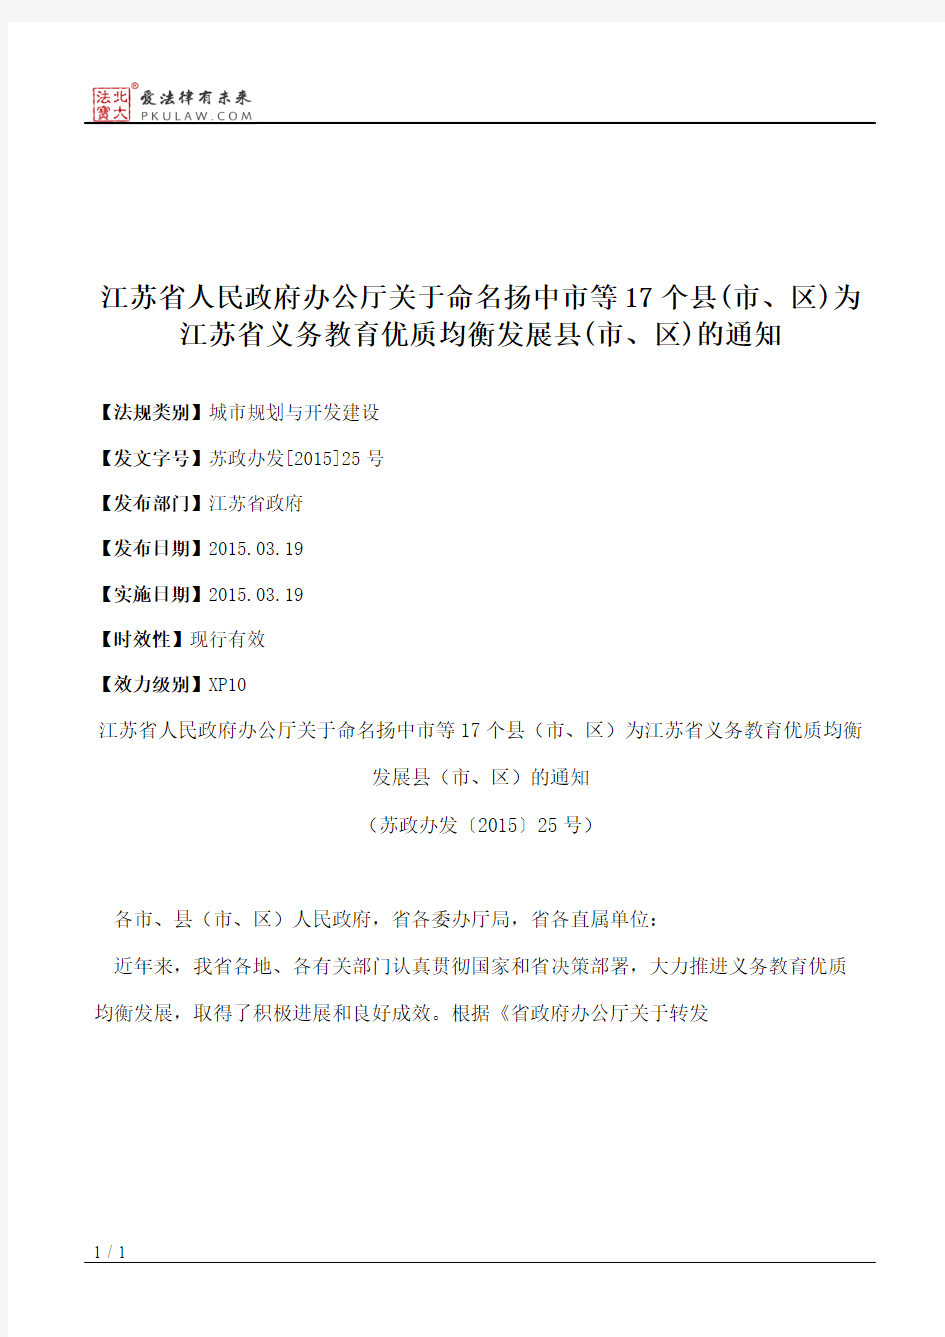 江苏省人民政府办公厅关于命名扬中市等17个县(市、区)为江苏省义